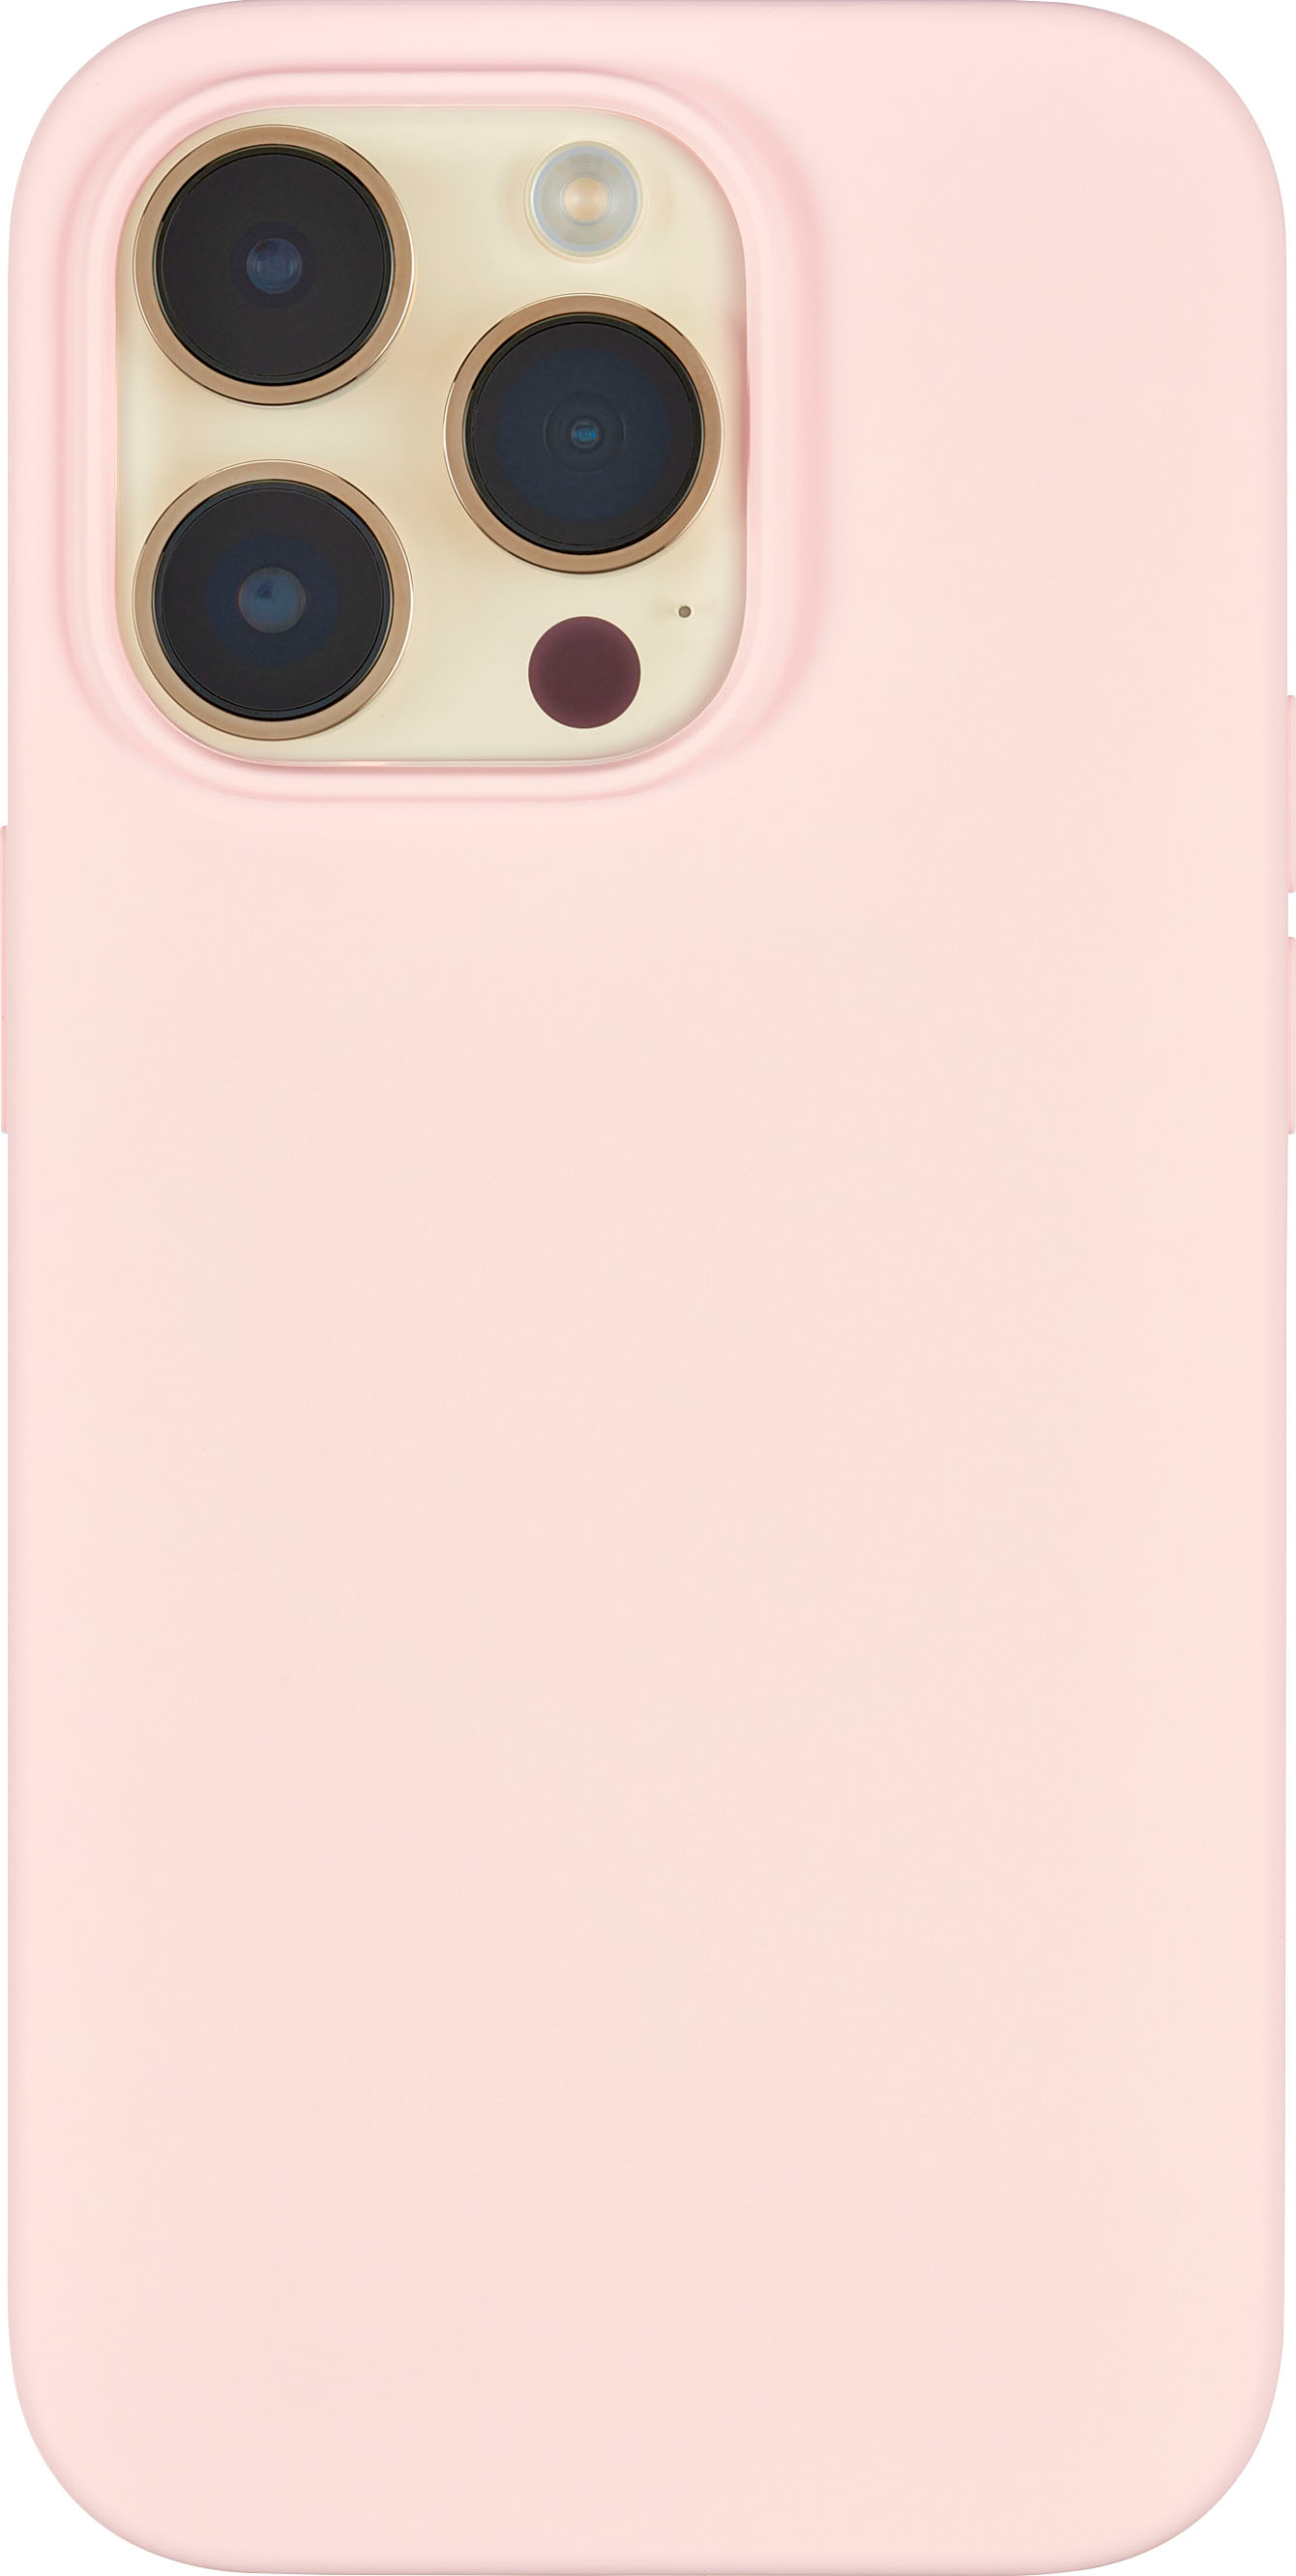 Supreme emblem pink iPhone SE 2020 Case